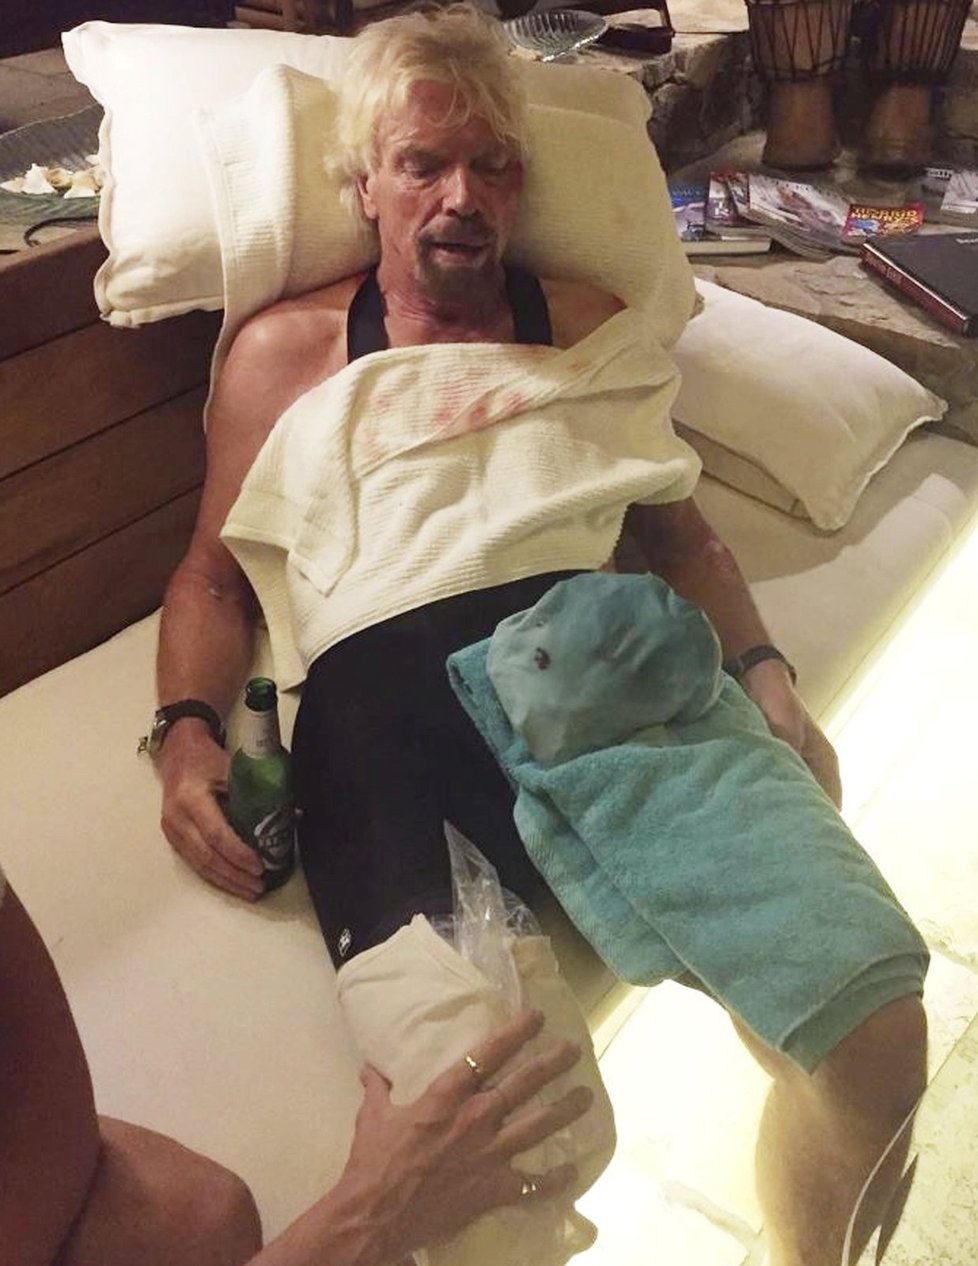 Branson vyvázl z nehody se zraněními.